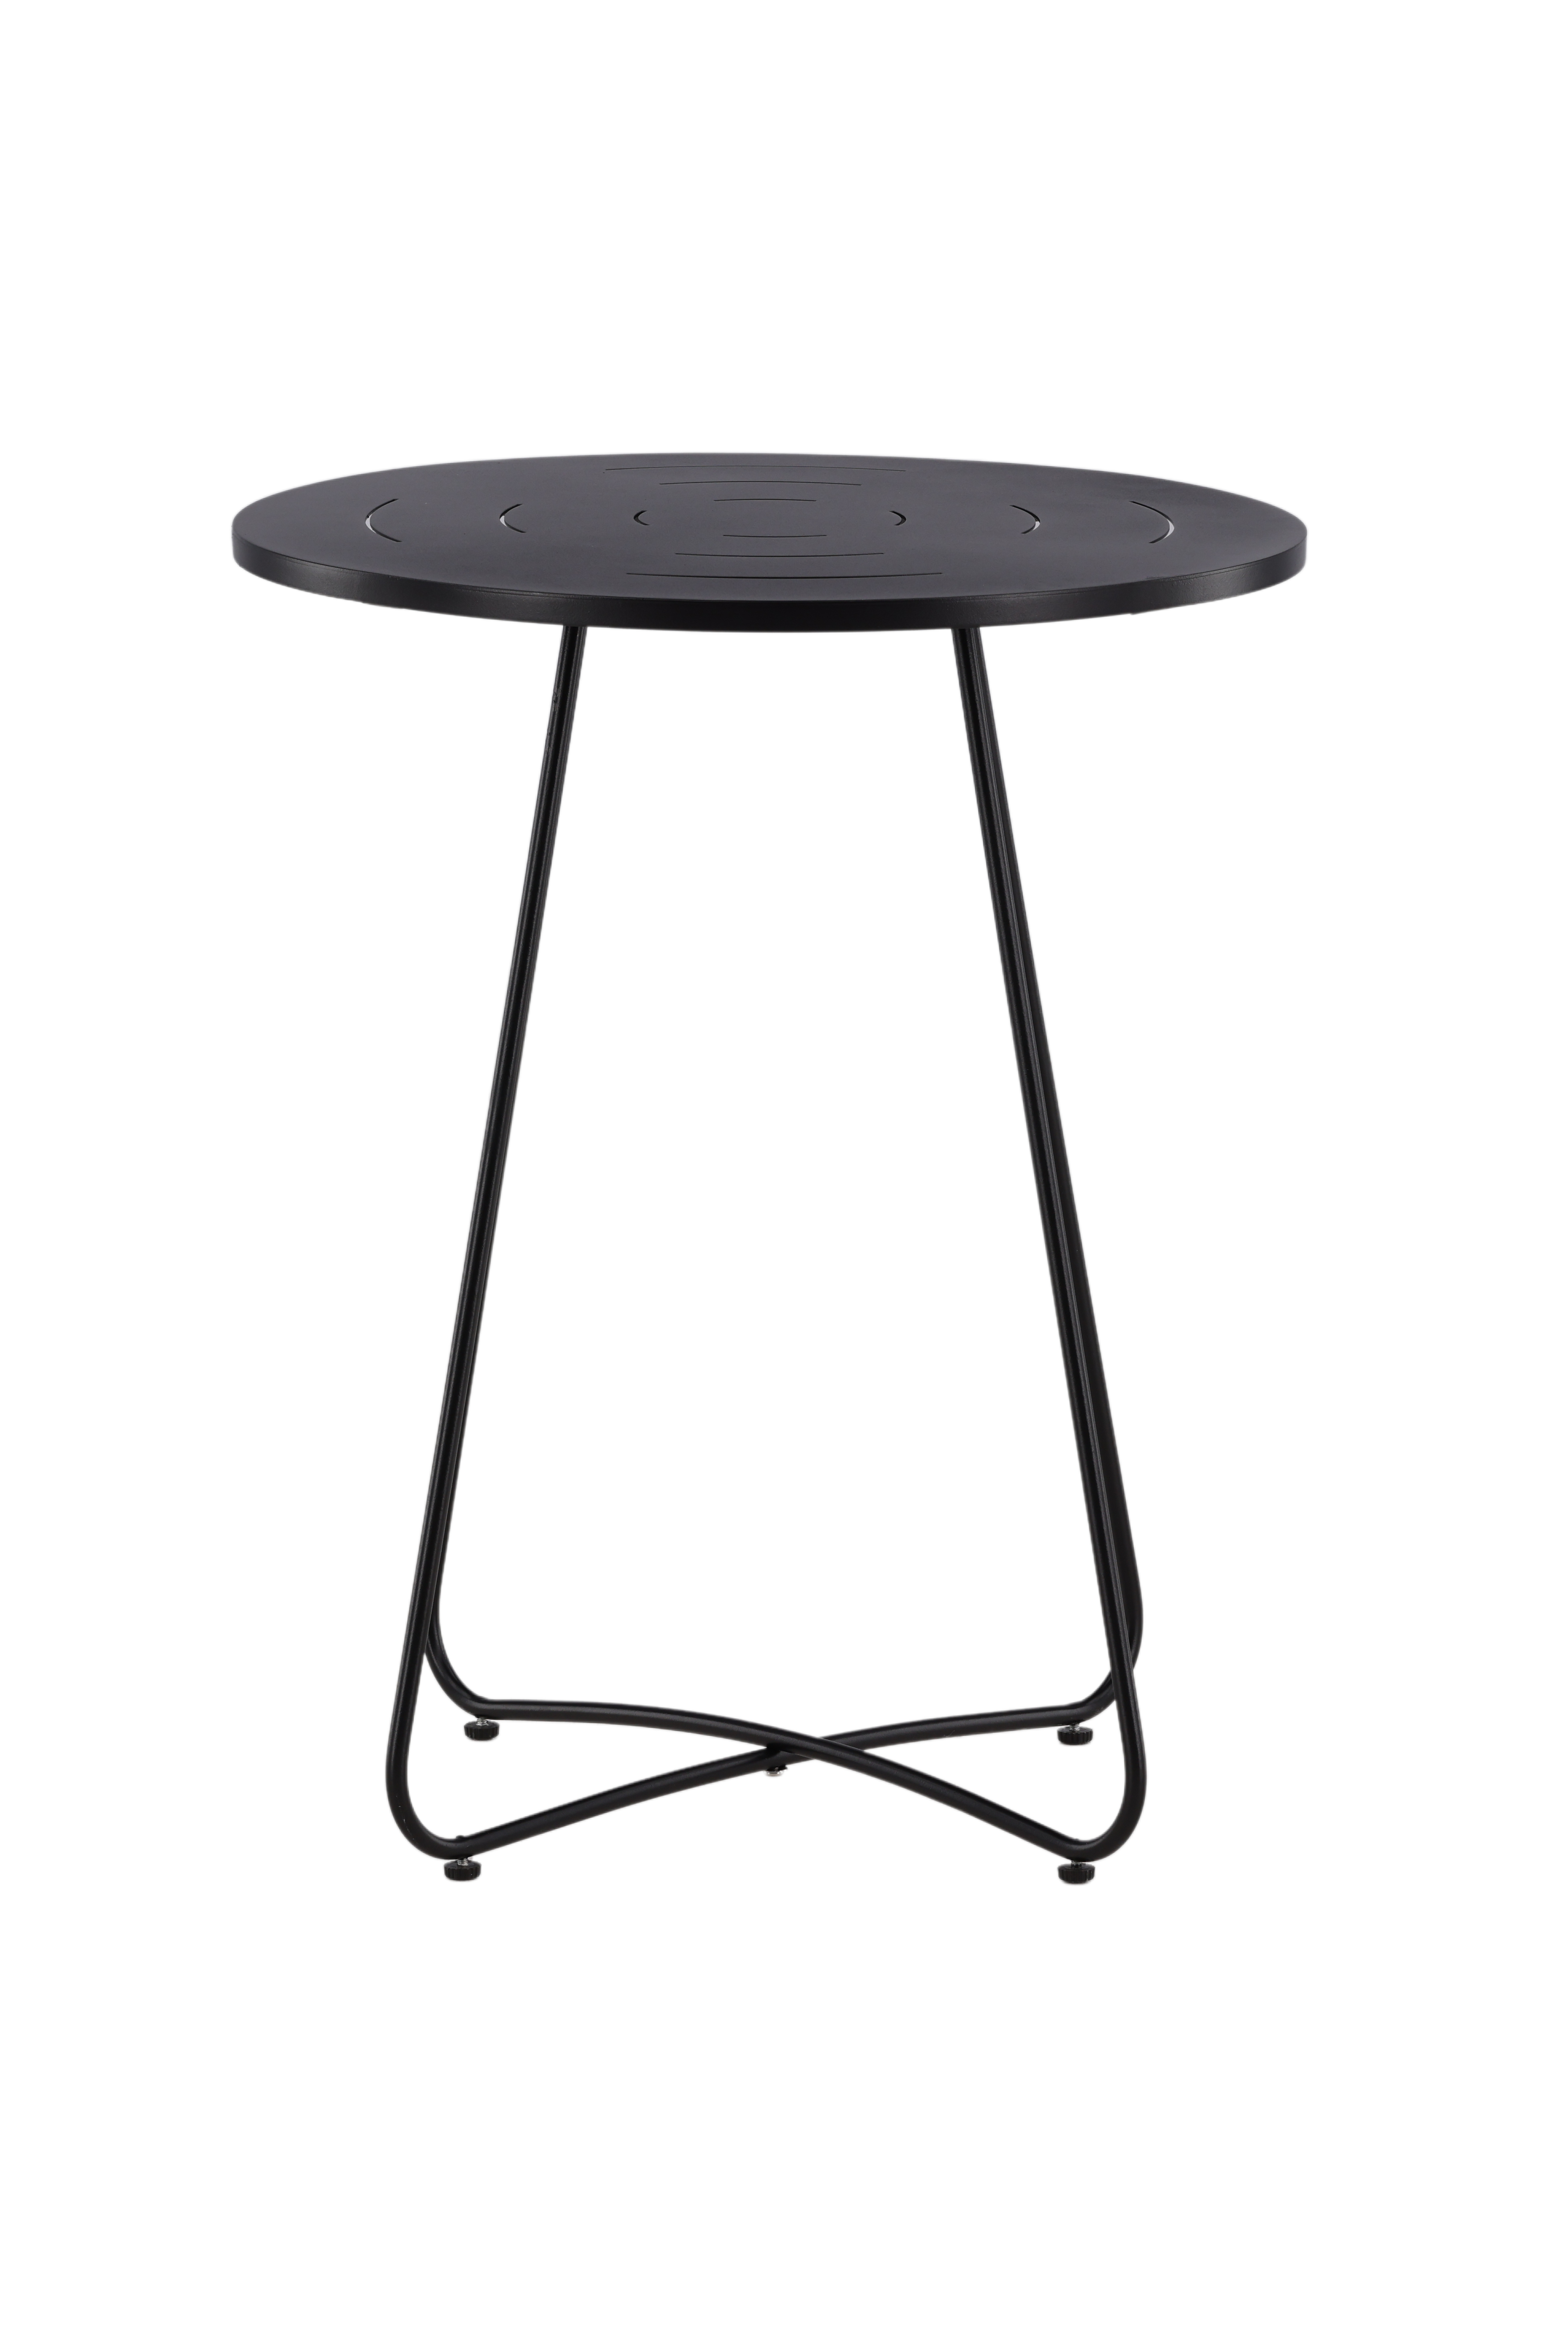 Billede af VENTURE DESIGN Bacong udendørs cafébord, rund - sort stål (Ø60)